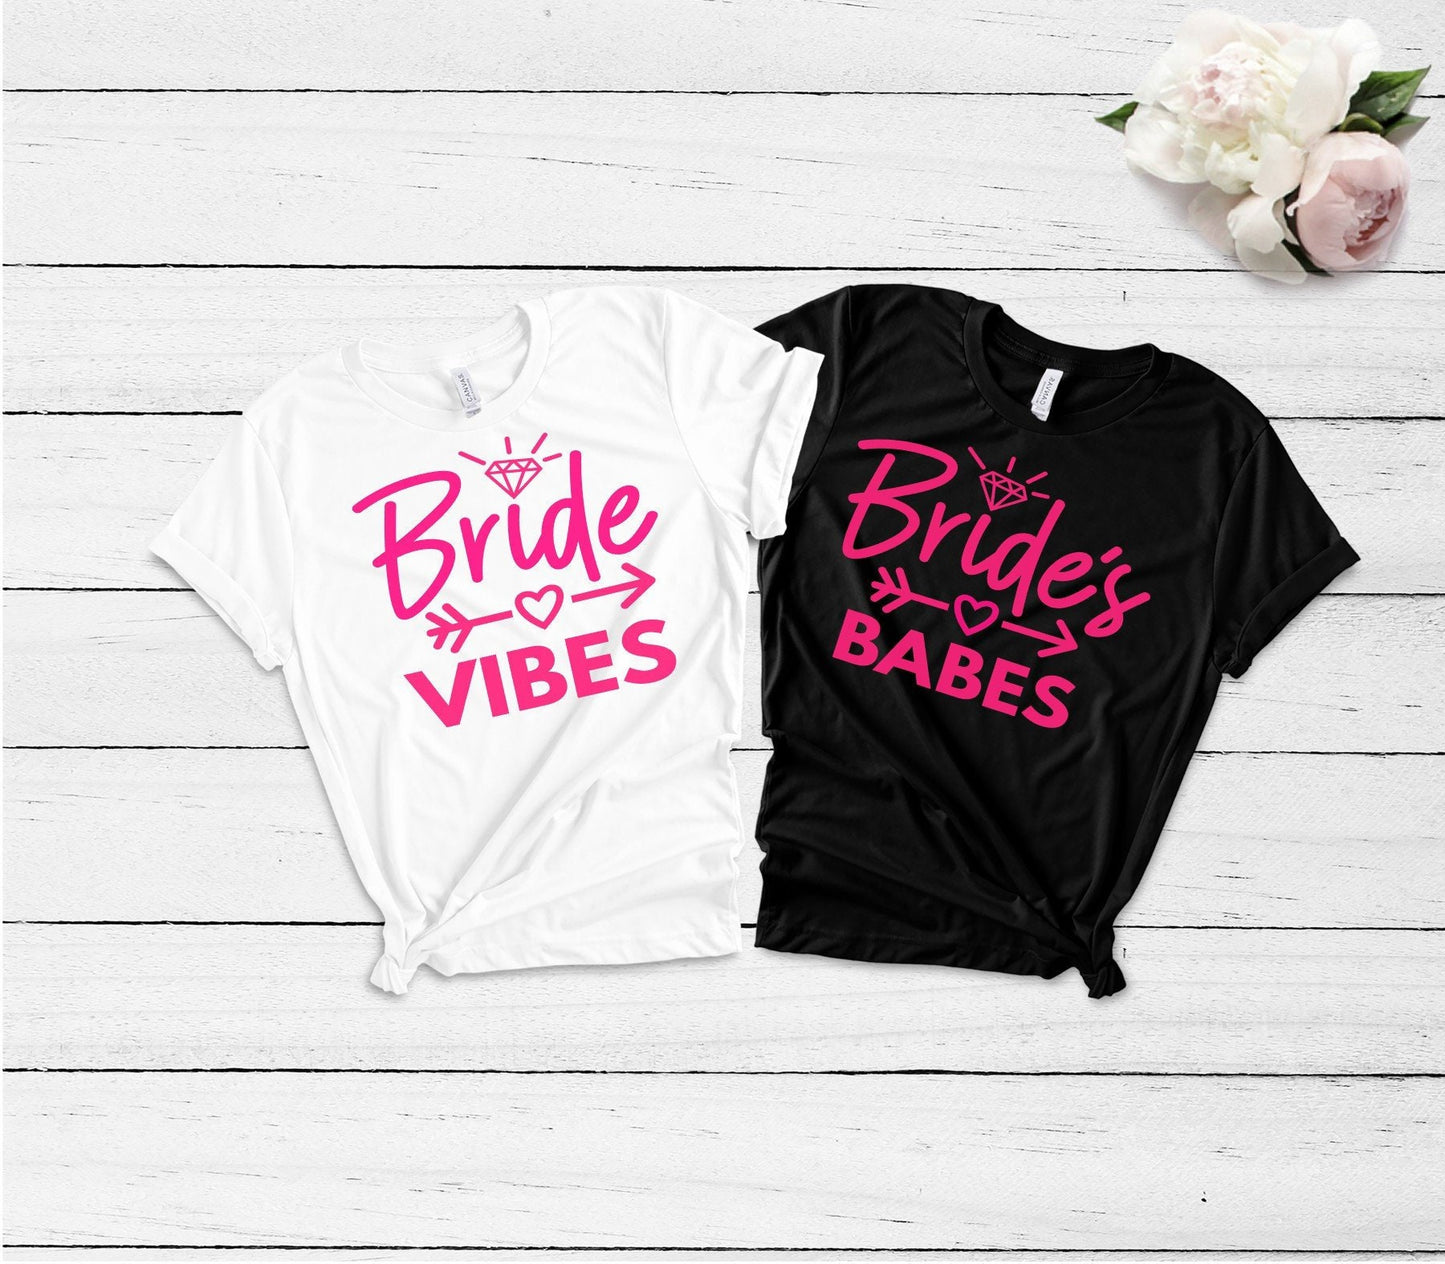 Bachelorette Shirts, Bachelorette Party Shirts, Bachelorette Shirts Funny, Bride Babe Shirts, Bride Vibes Shirt, Bride Vibes, Bachelorette